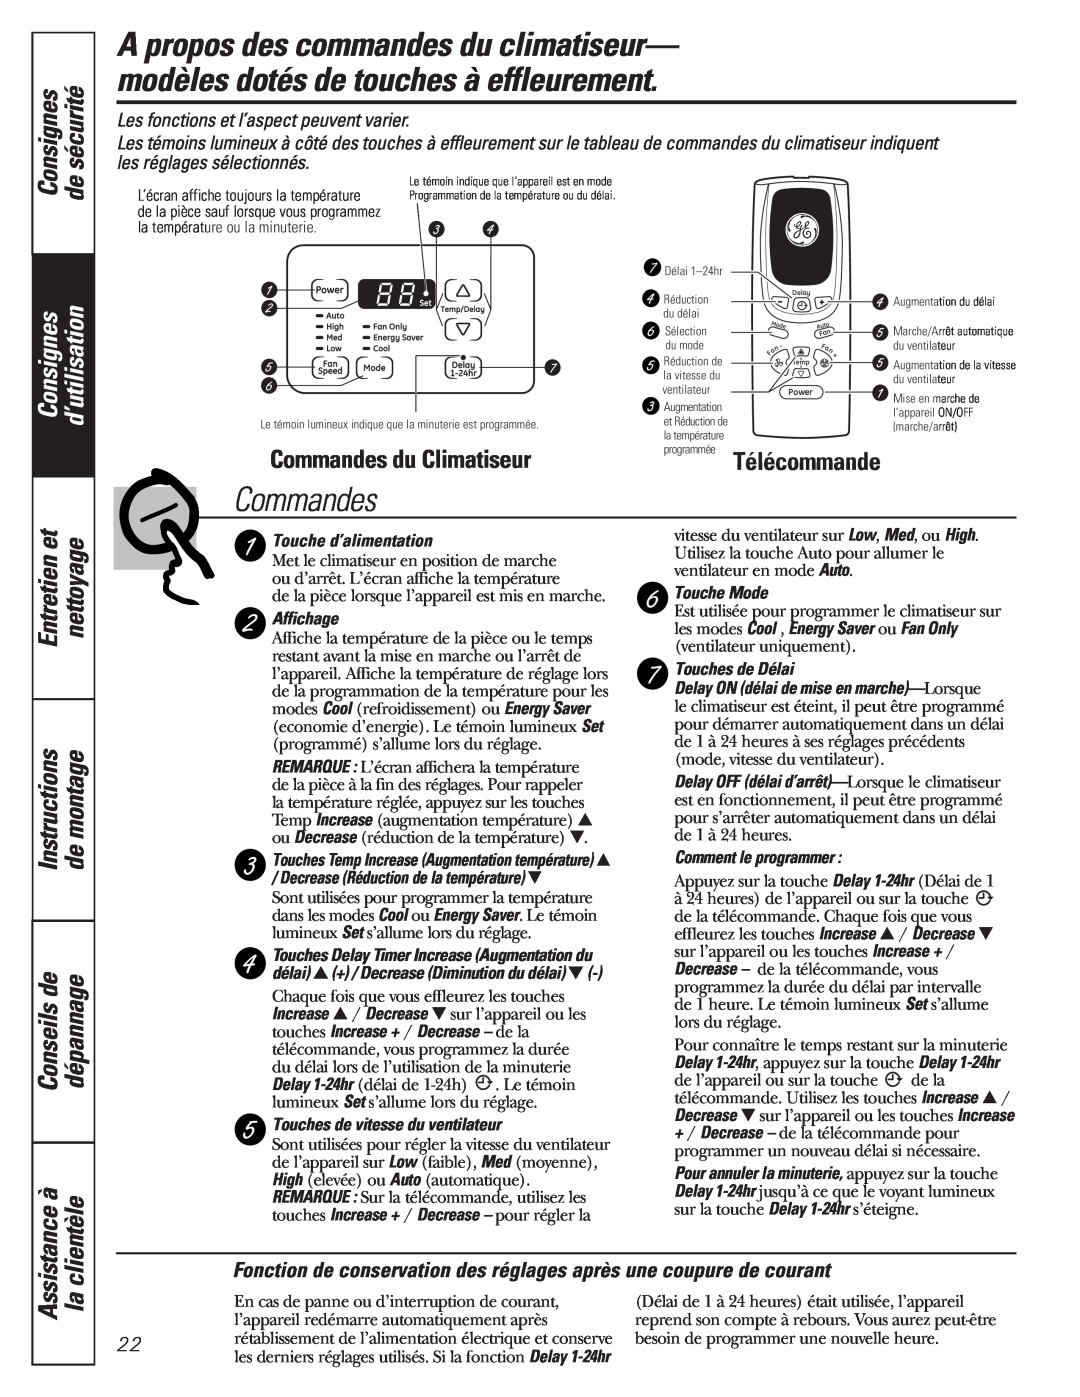 GE AEM10 Consignes, d’utilisation, Commandes du Climatiseur, Télécommande, Les fonctions et l’aspect peuvent varier 